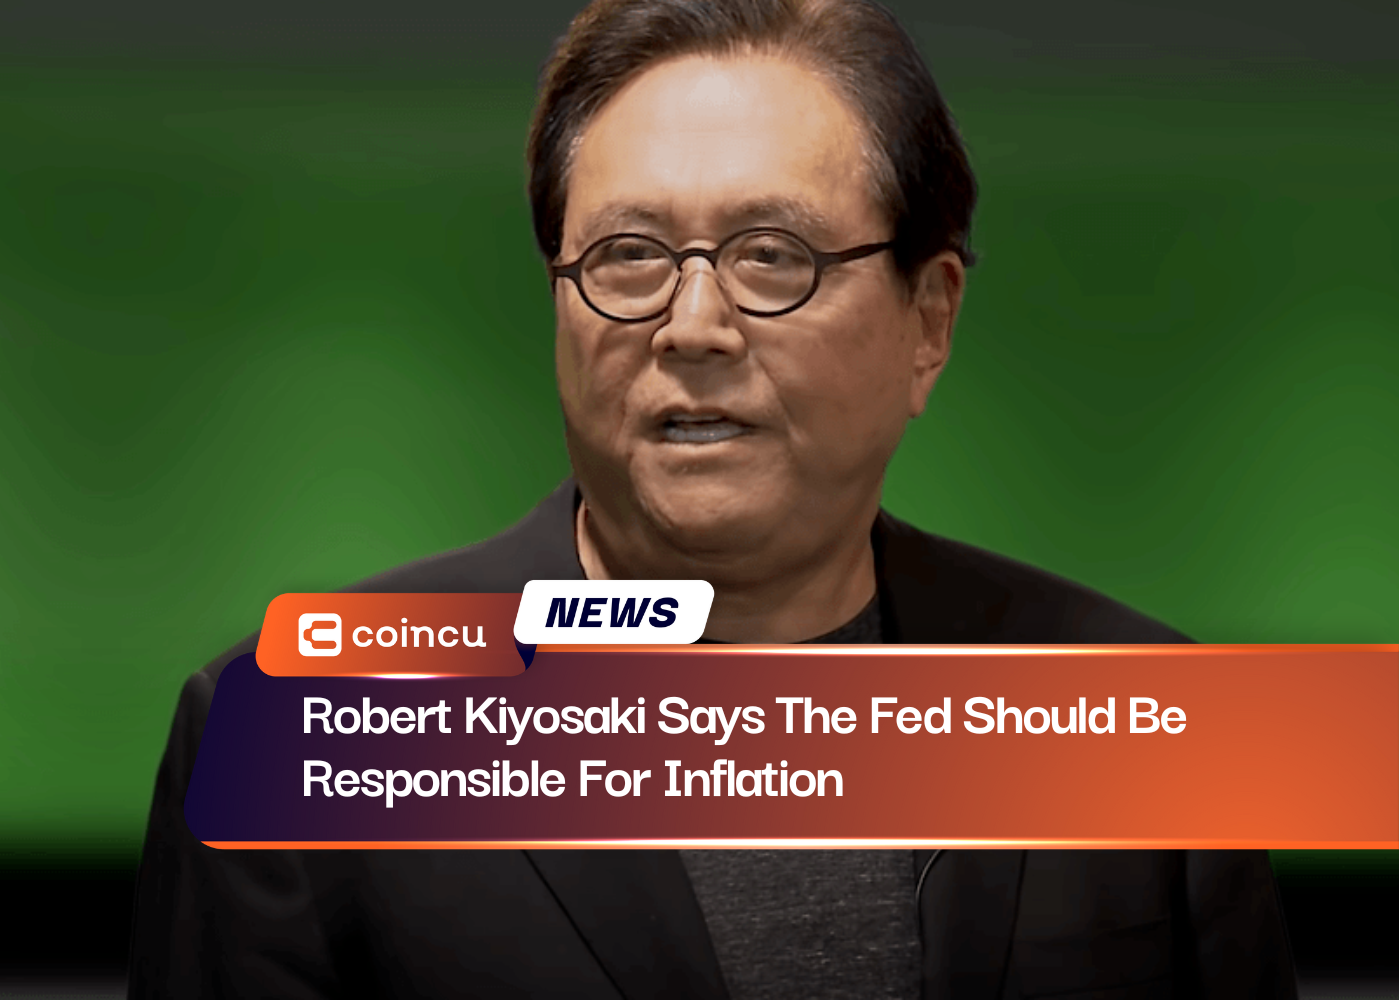 Robert Kiyosaki dice que la Reserva Federal debería ser responsable de la inflación